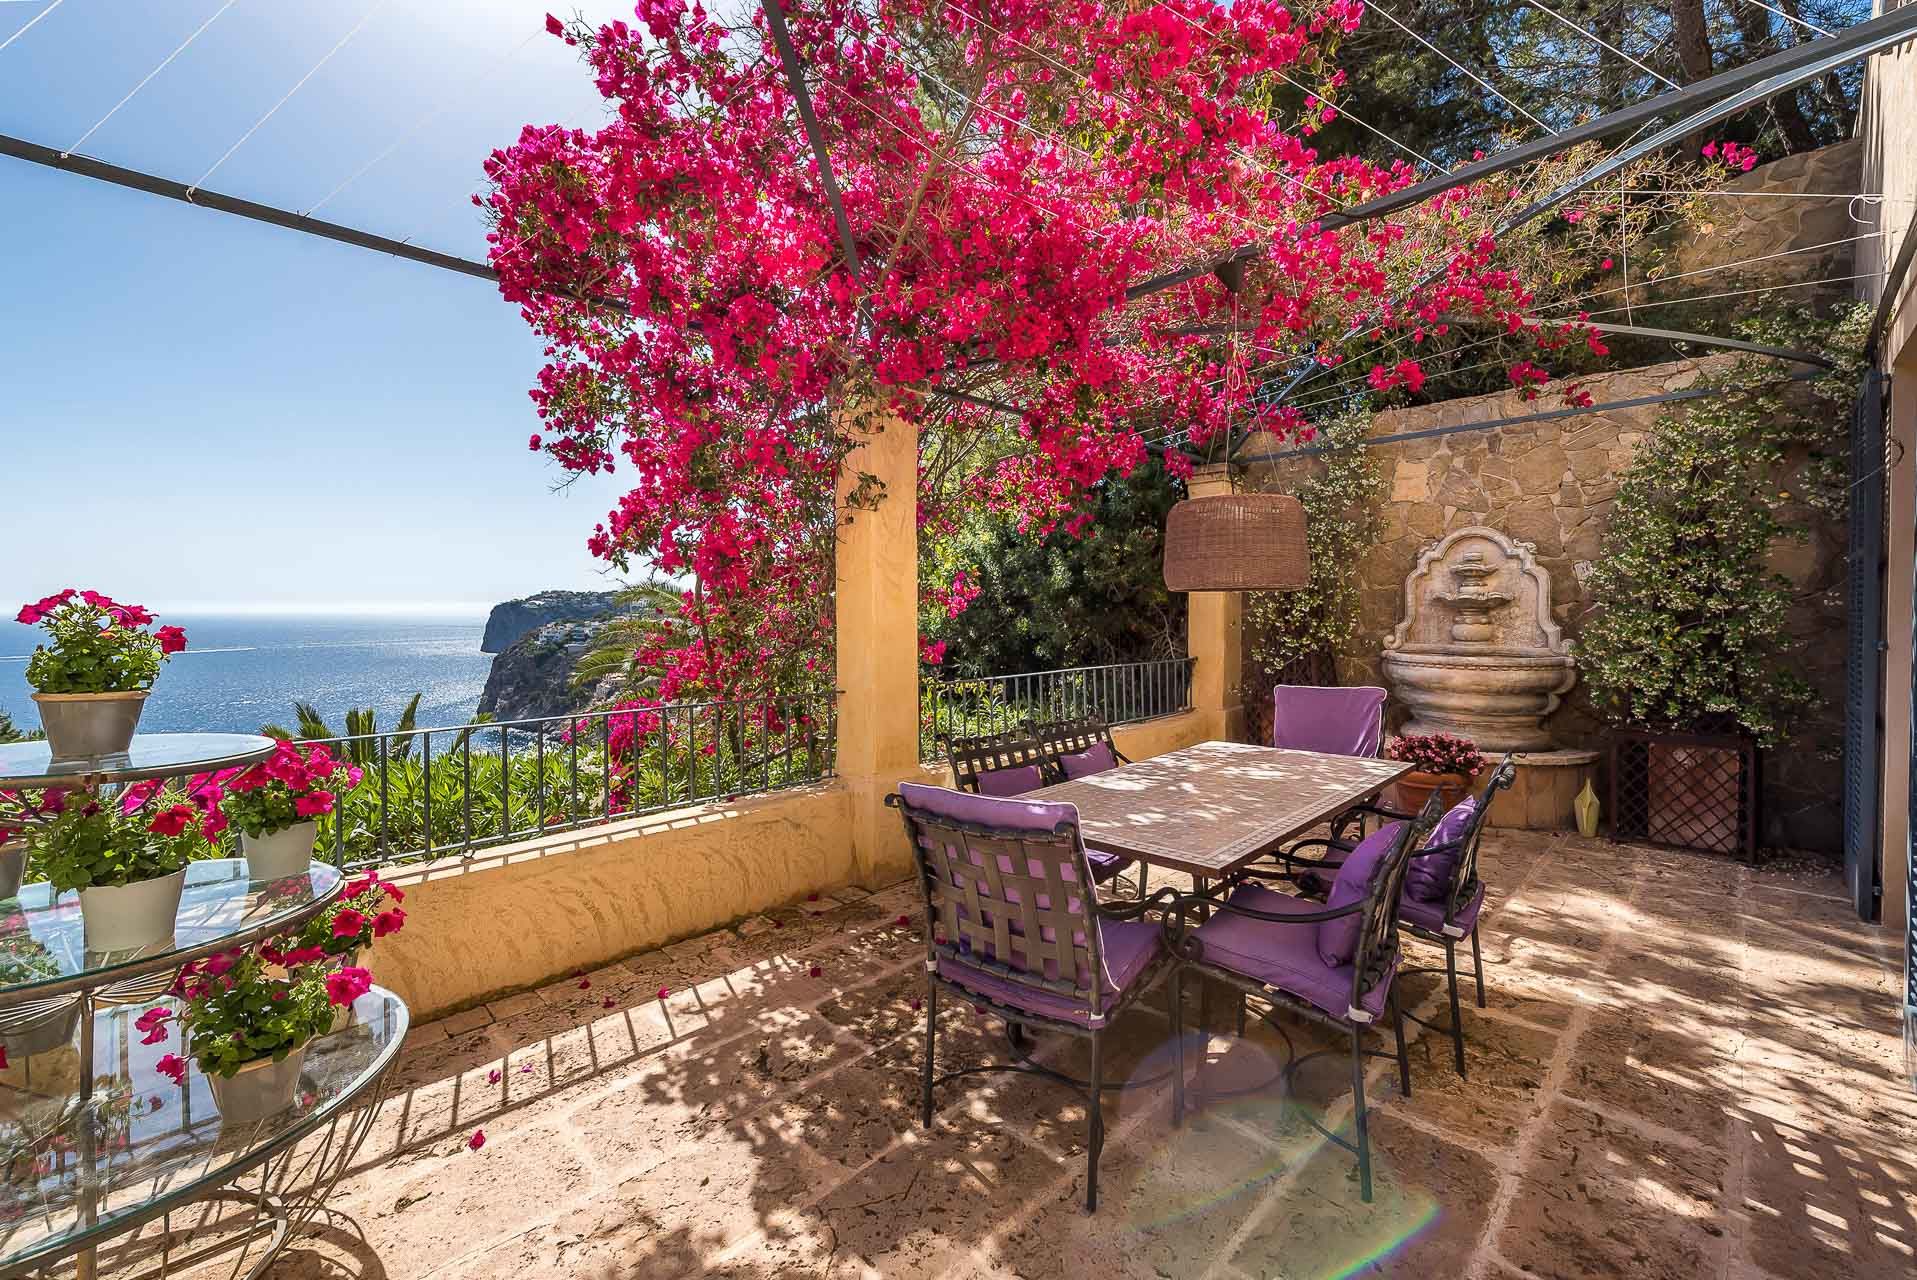 Mediterrane Villa mit atemberaubendem Blick - Offener Terrassenbereich mit Meerblick